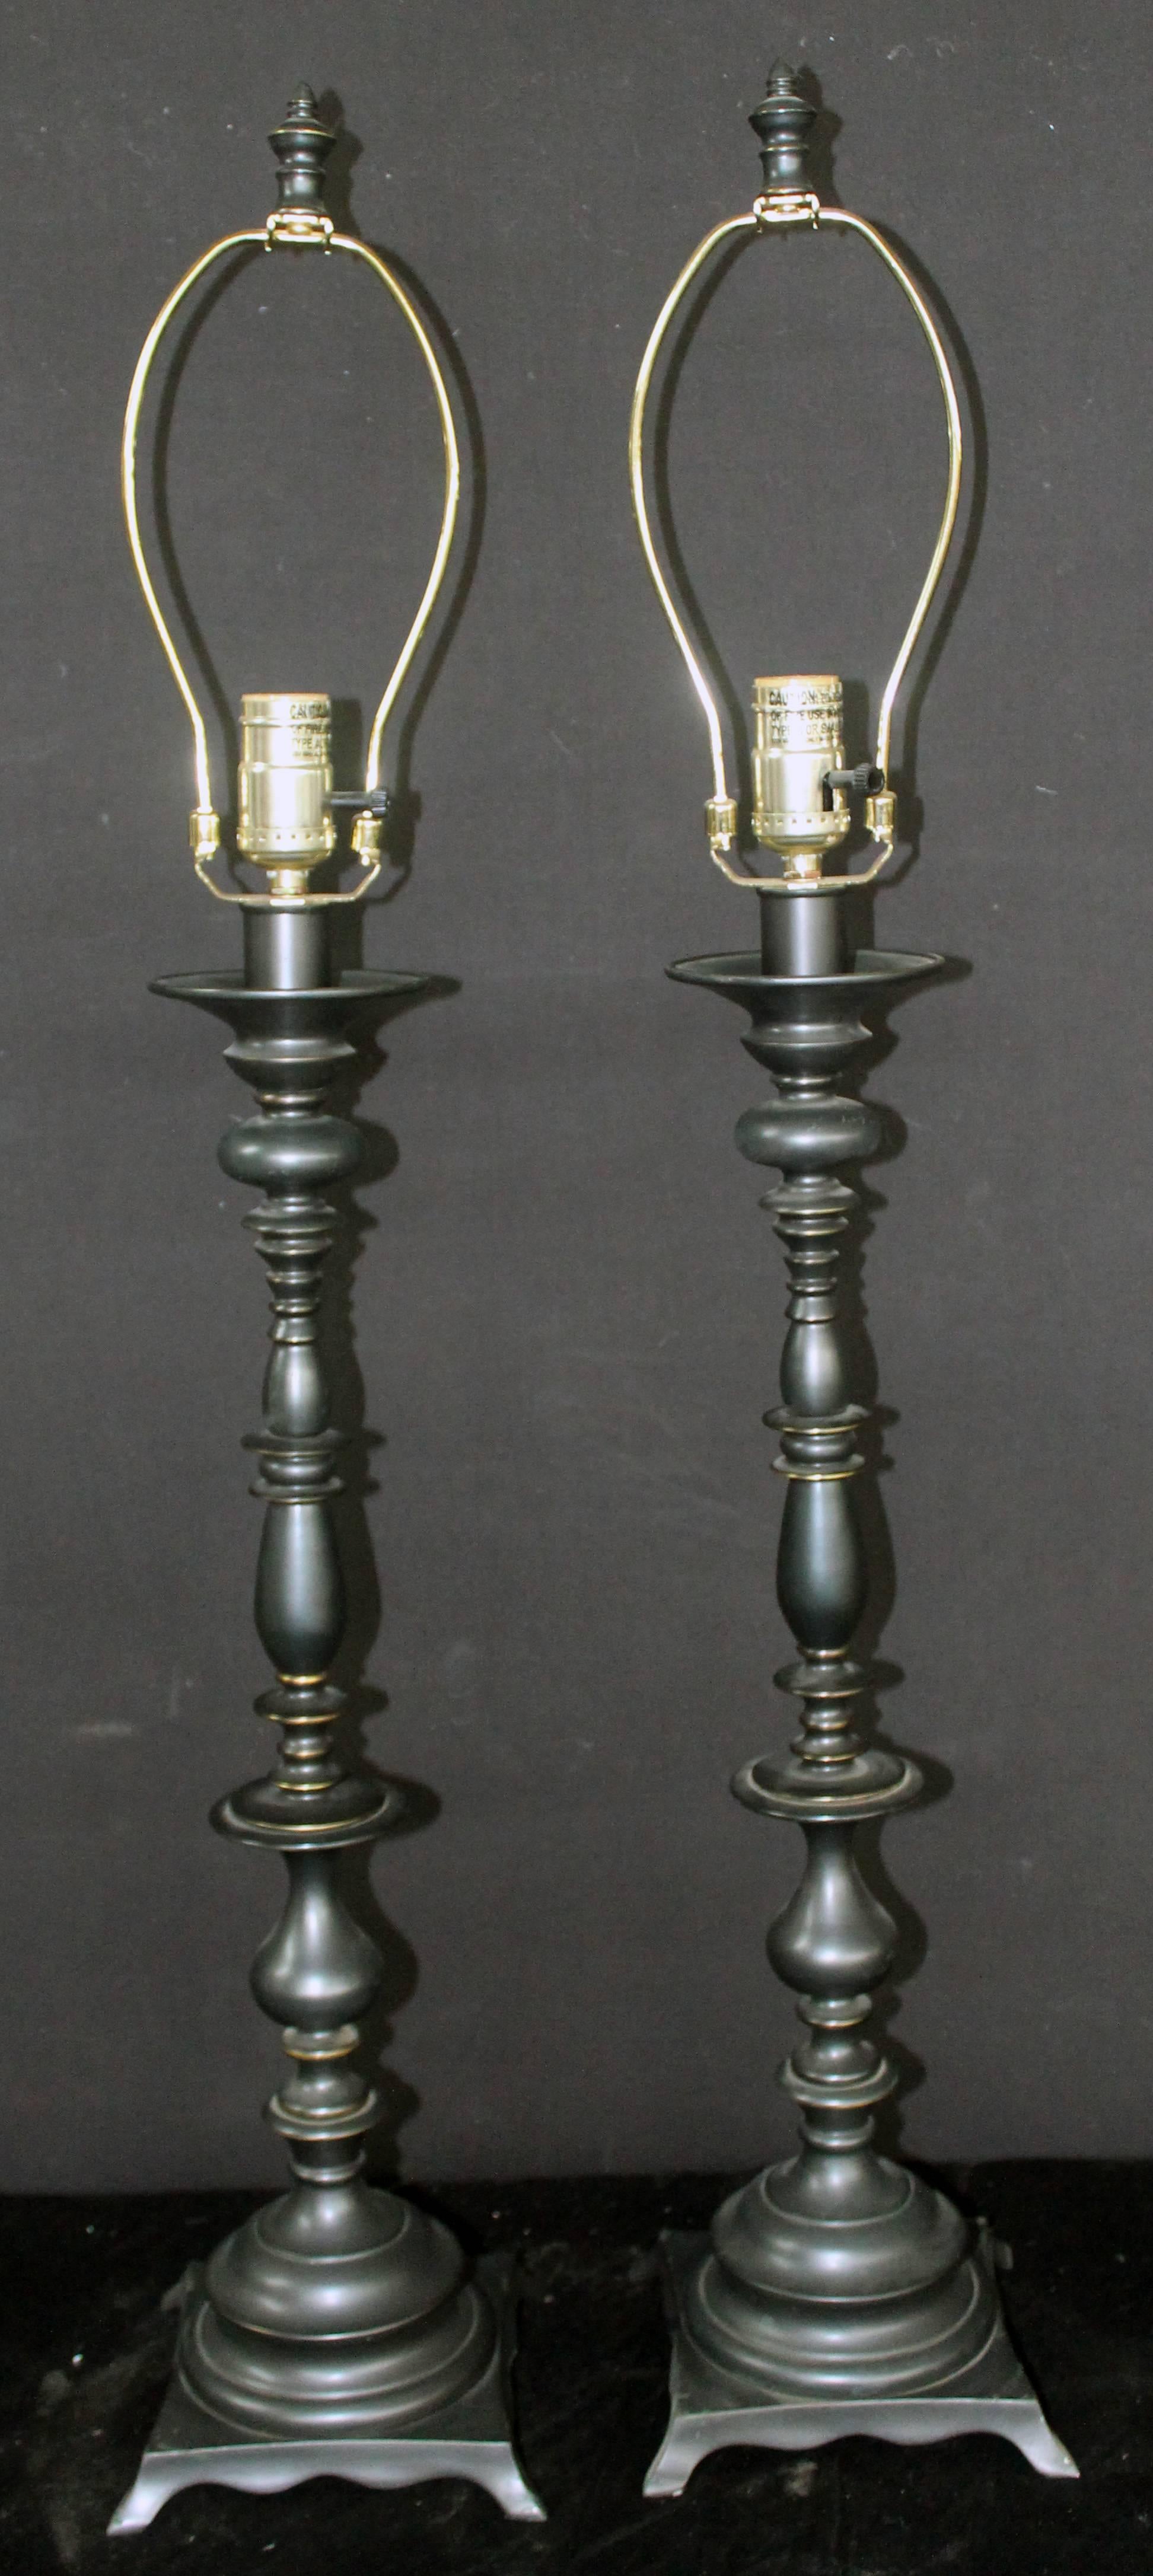 Paire de lampes traditionnelles ornées en métal.

La base est de 7